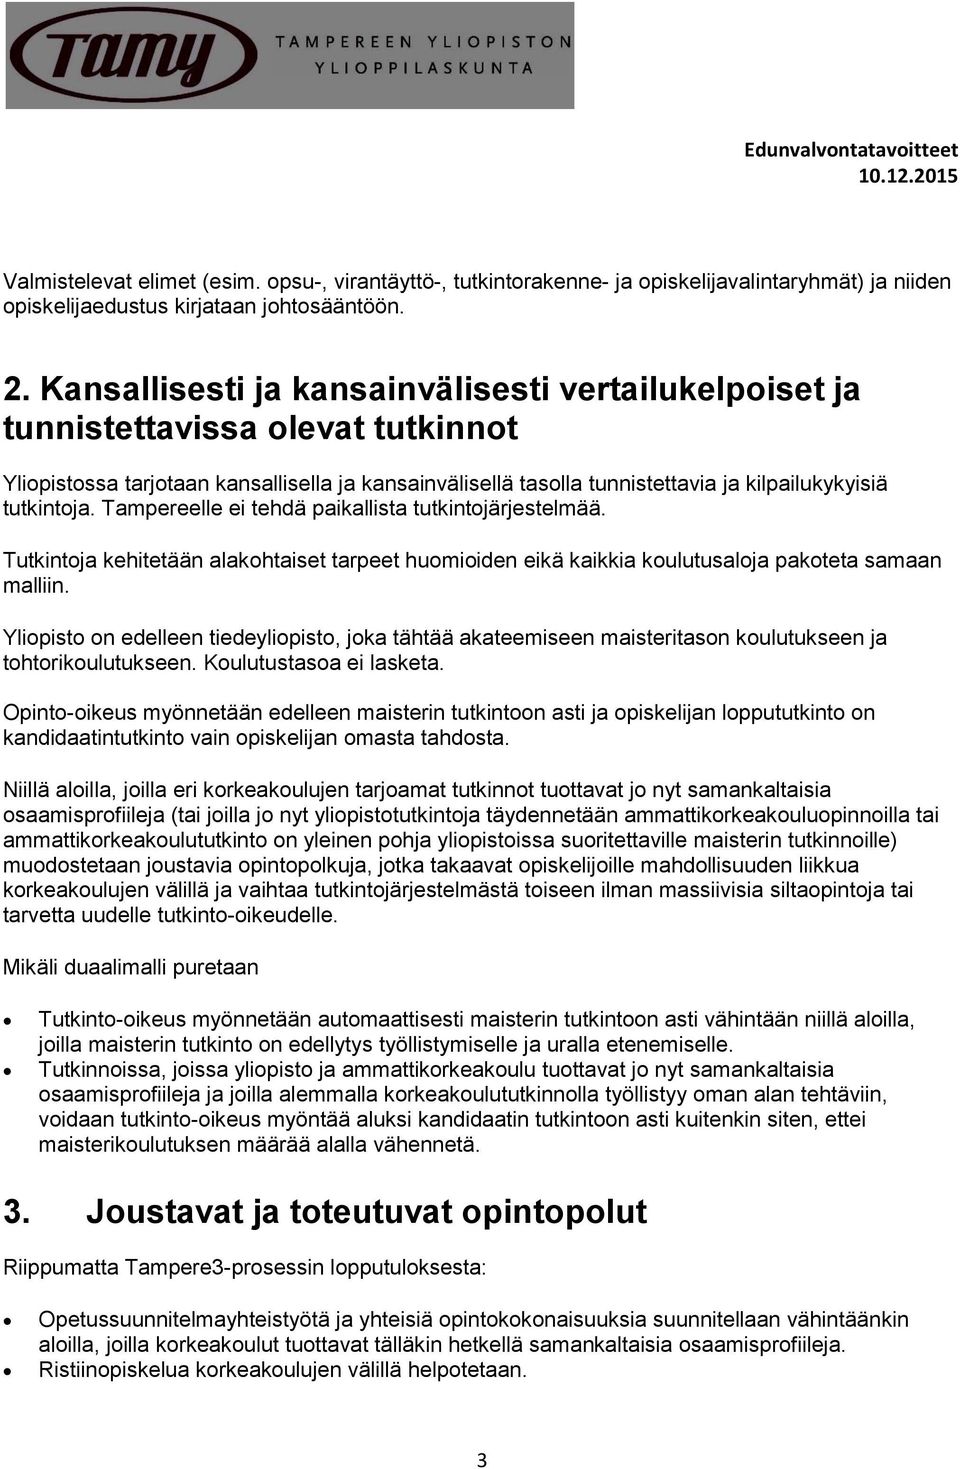 Tampereelle ei tehdä paikallista tutkintojärjestelmää. Tutkintoja kehitetään alakohtaiset tarpeet huomioiden eikä kaikkia koulutusaloja pakoteta samaan malliin.